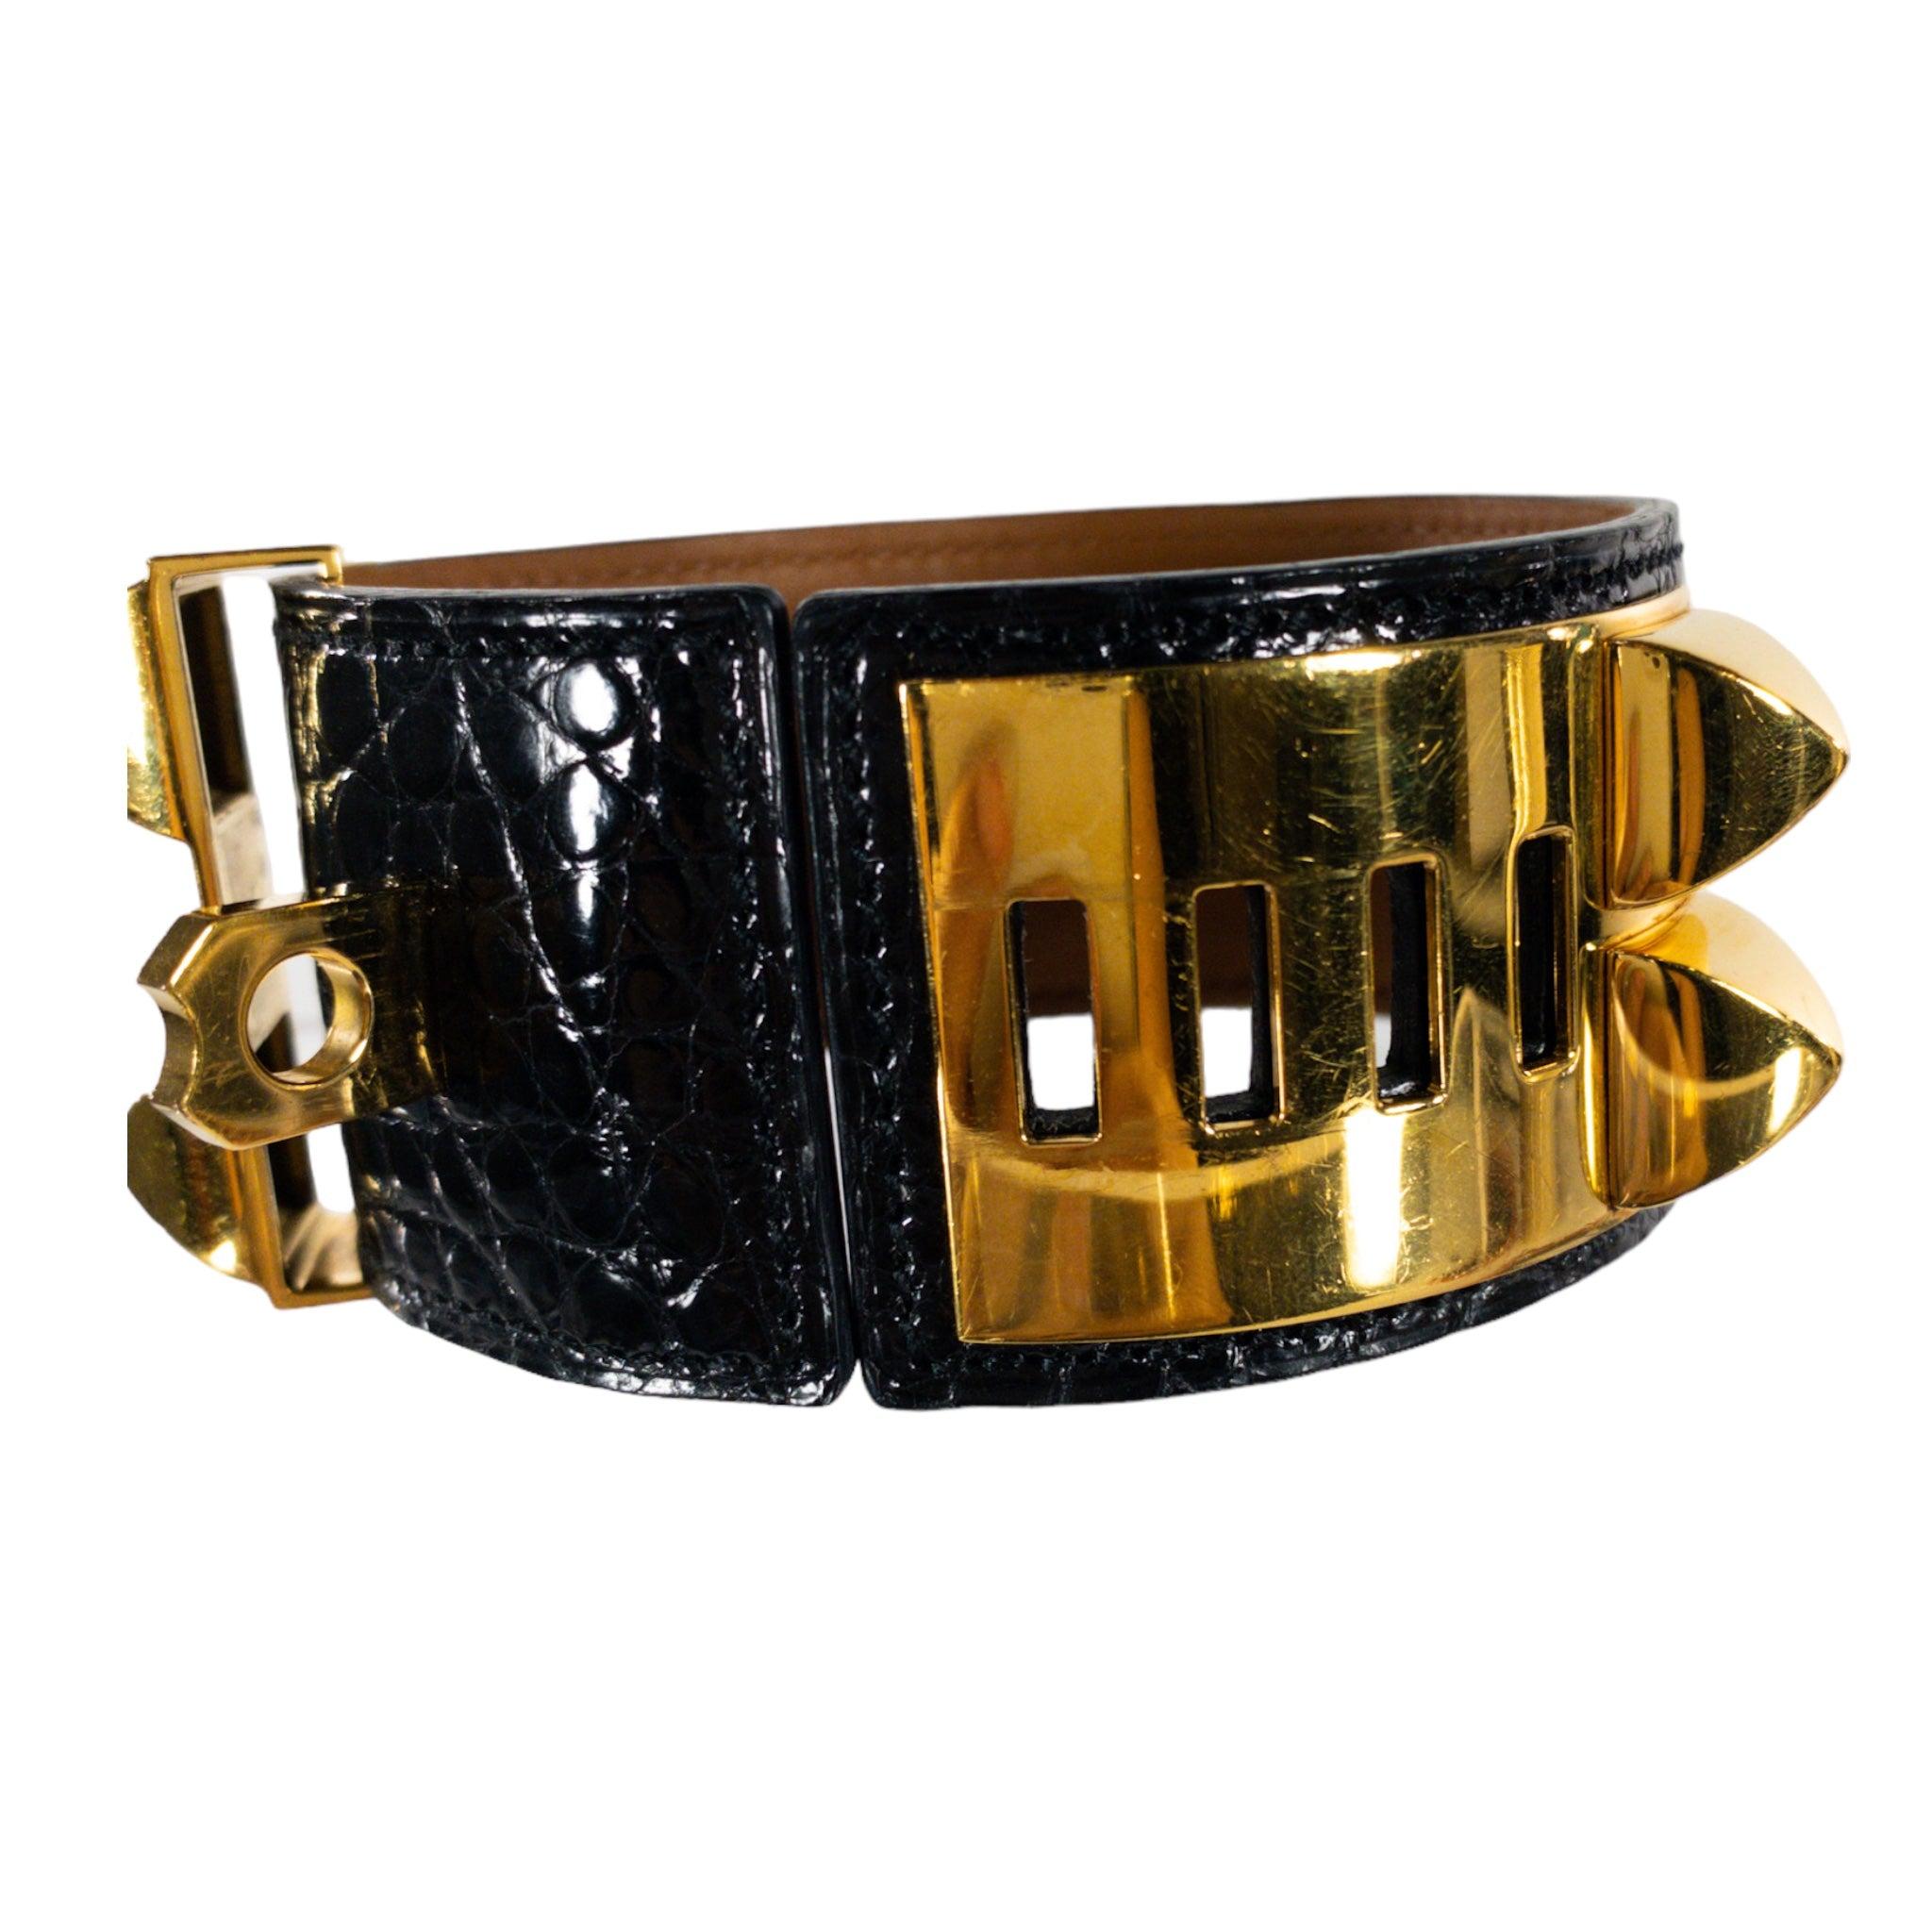 Hermes Black Crocodile CDC Collier de Chien GHW

Il s'agit d'un authentique bracelet Hermès Collier de Chien ou 'CDC'. Cette manchette se compose de peau de crocodile noir brillant et d'accessoires dorés avec les clous classiques d'Hermès.